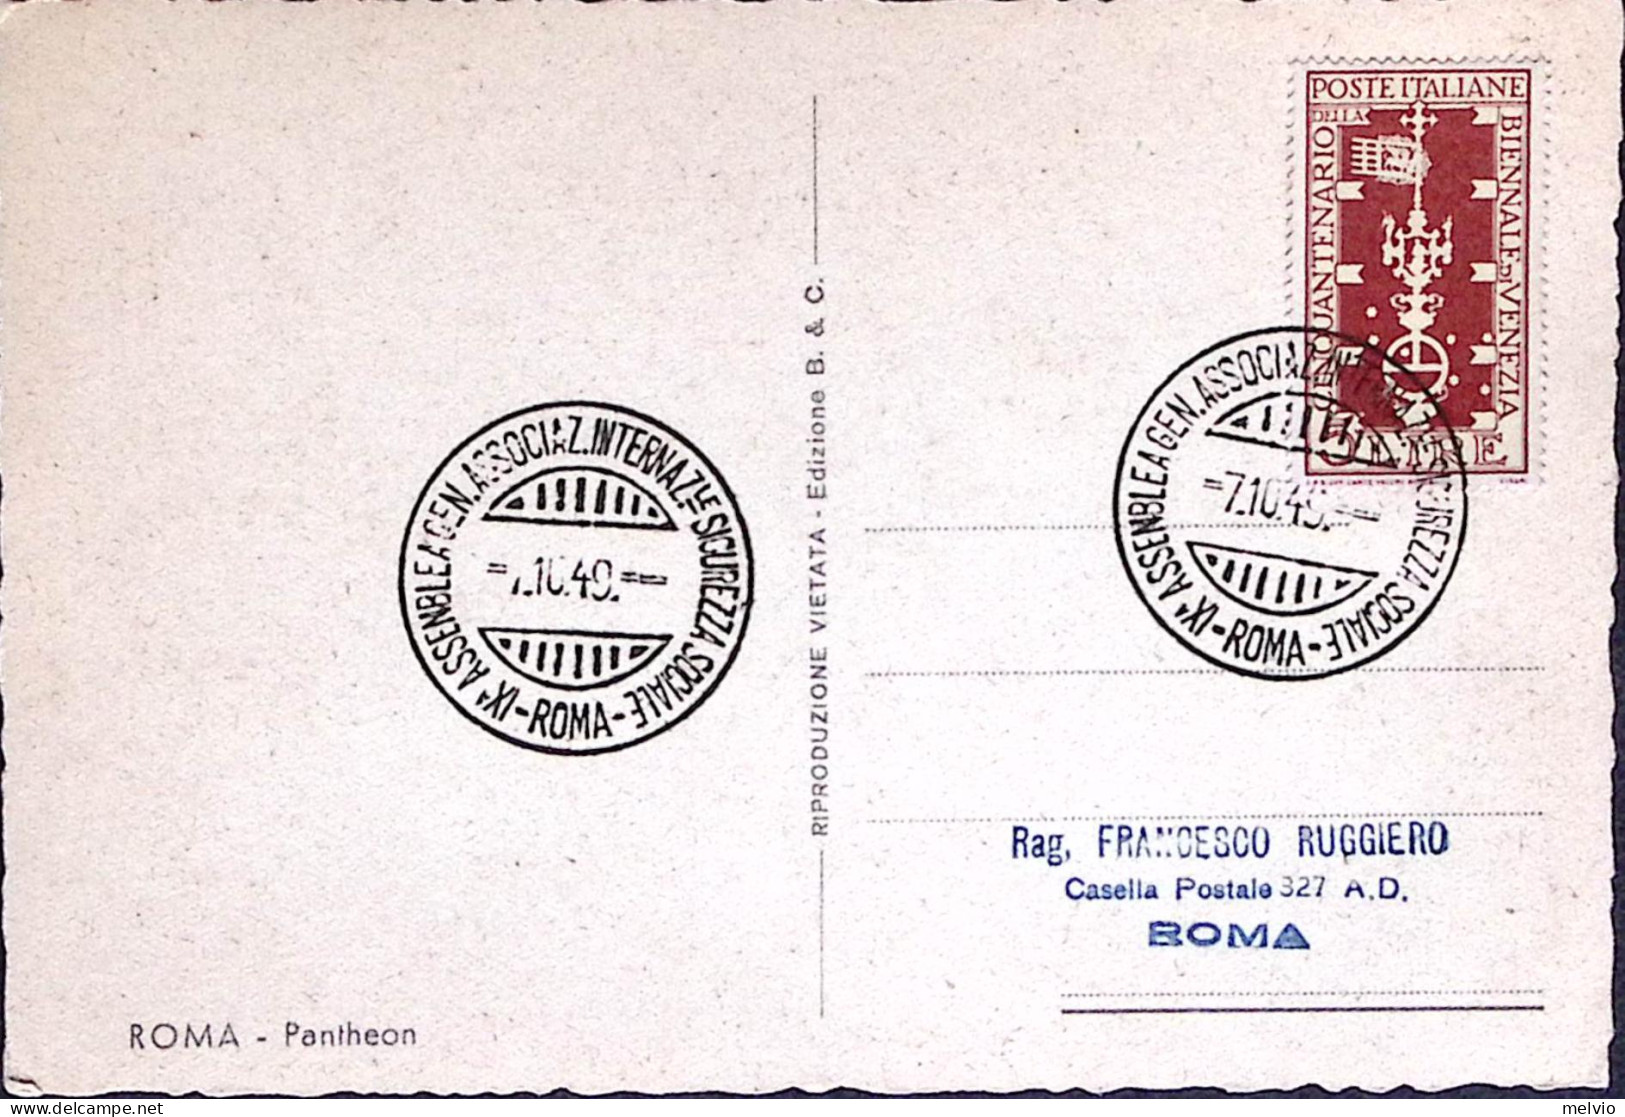 1949-ROMA Assemblea Sicurezza Sociale Annullo Speciale (7.10) Su Cartolina Affra - Demonstrationen